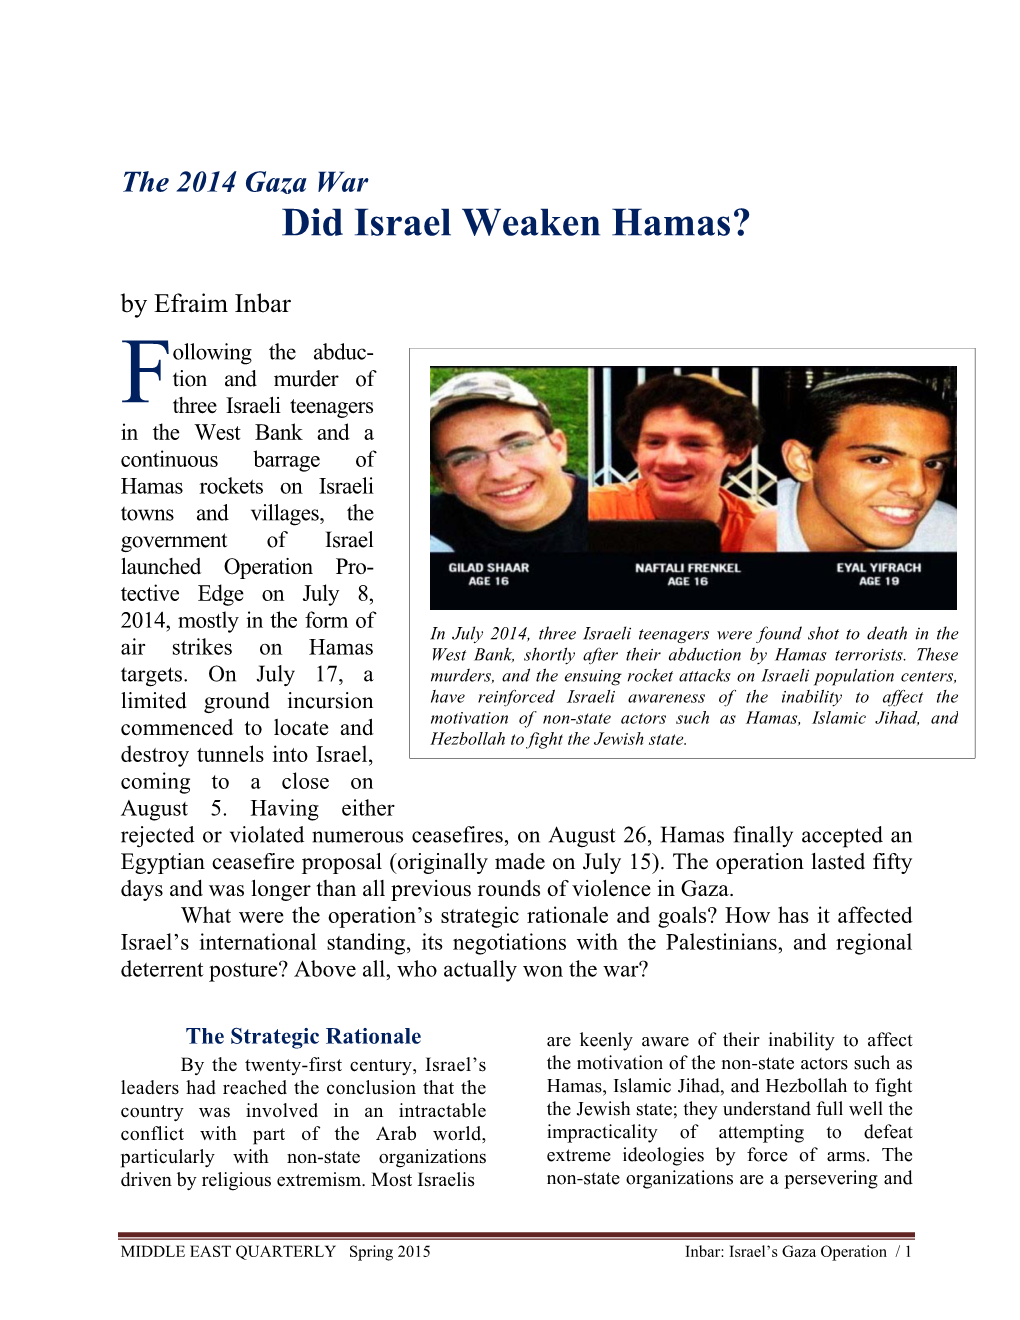 Did Israel Weaken Hamas? by Efraim Inbar